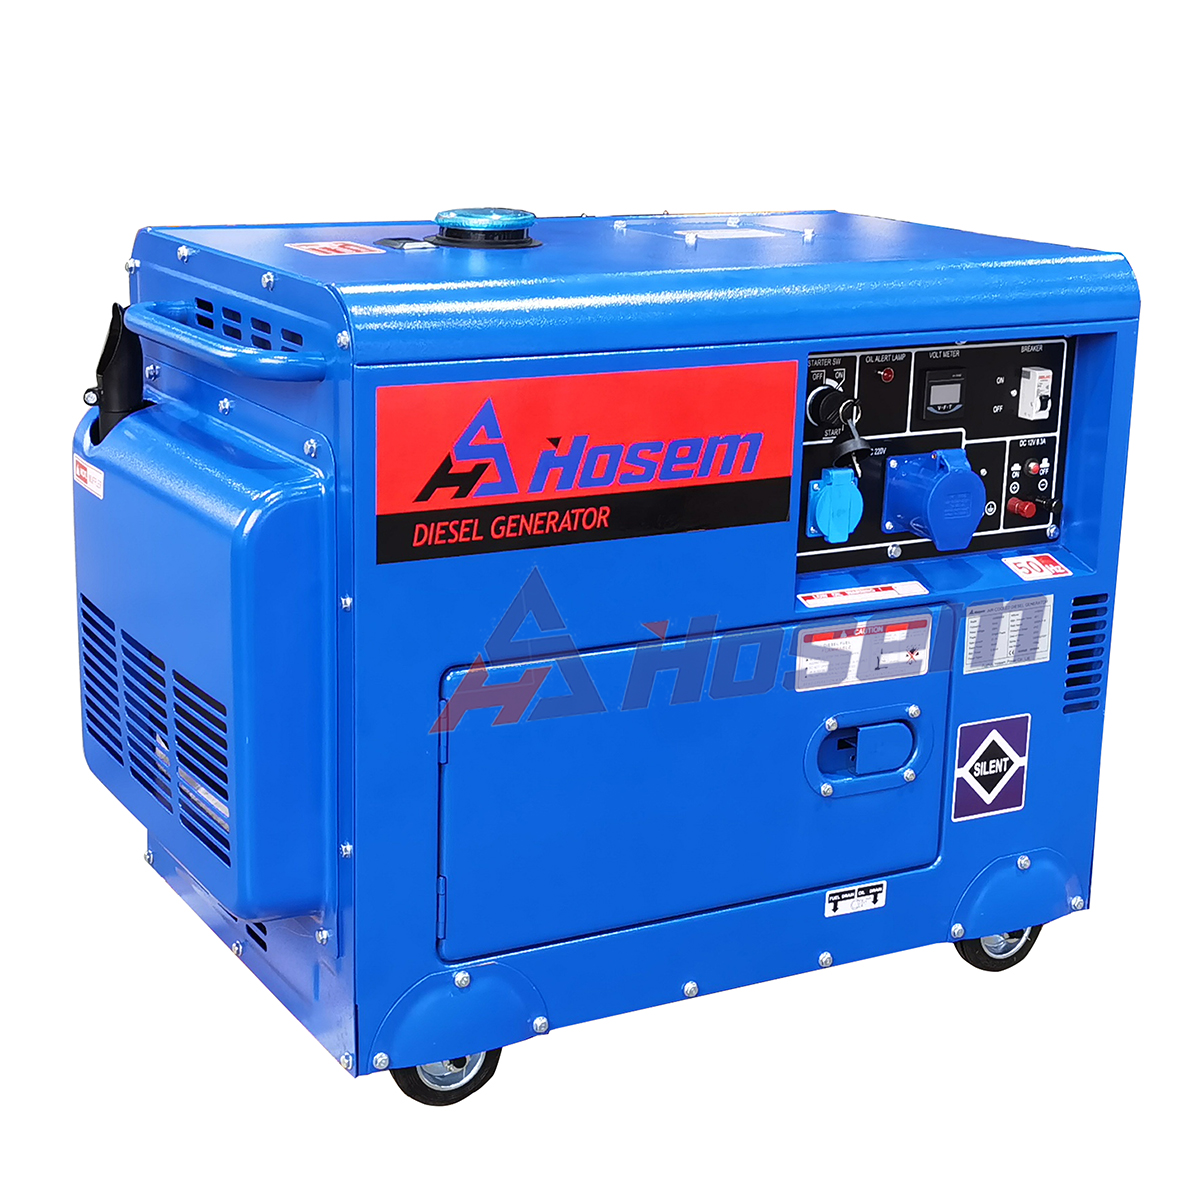 5kw air cooled diesel generator